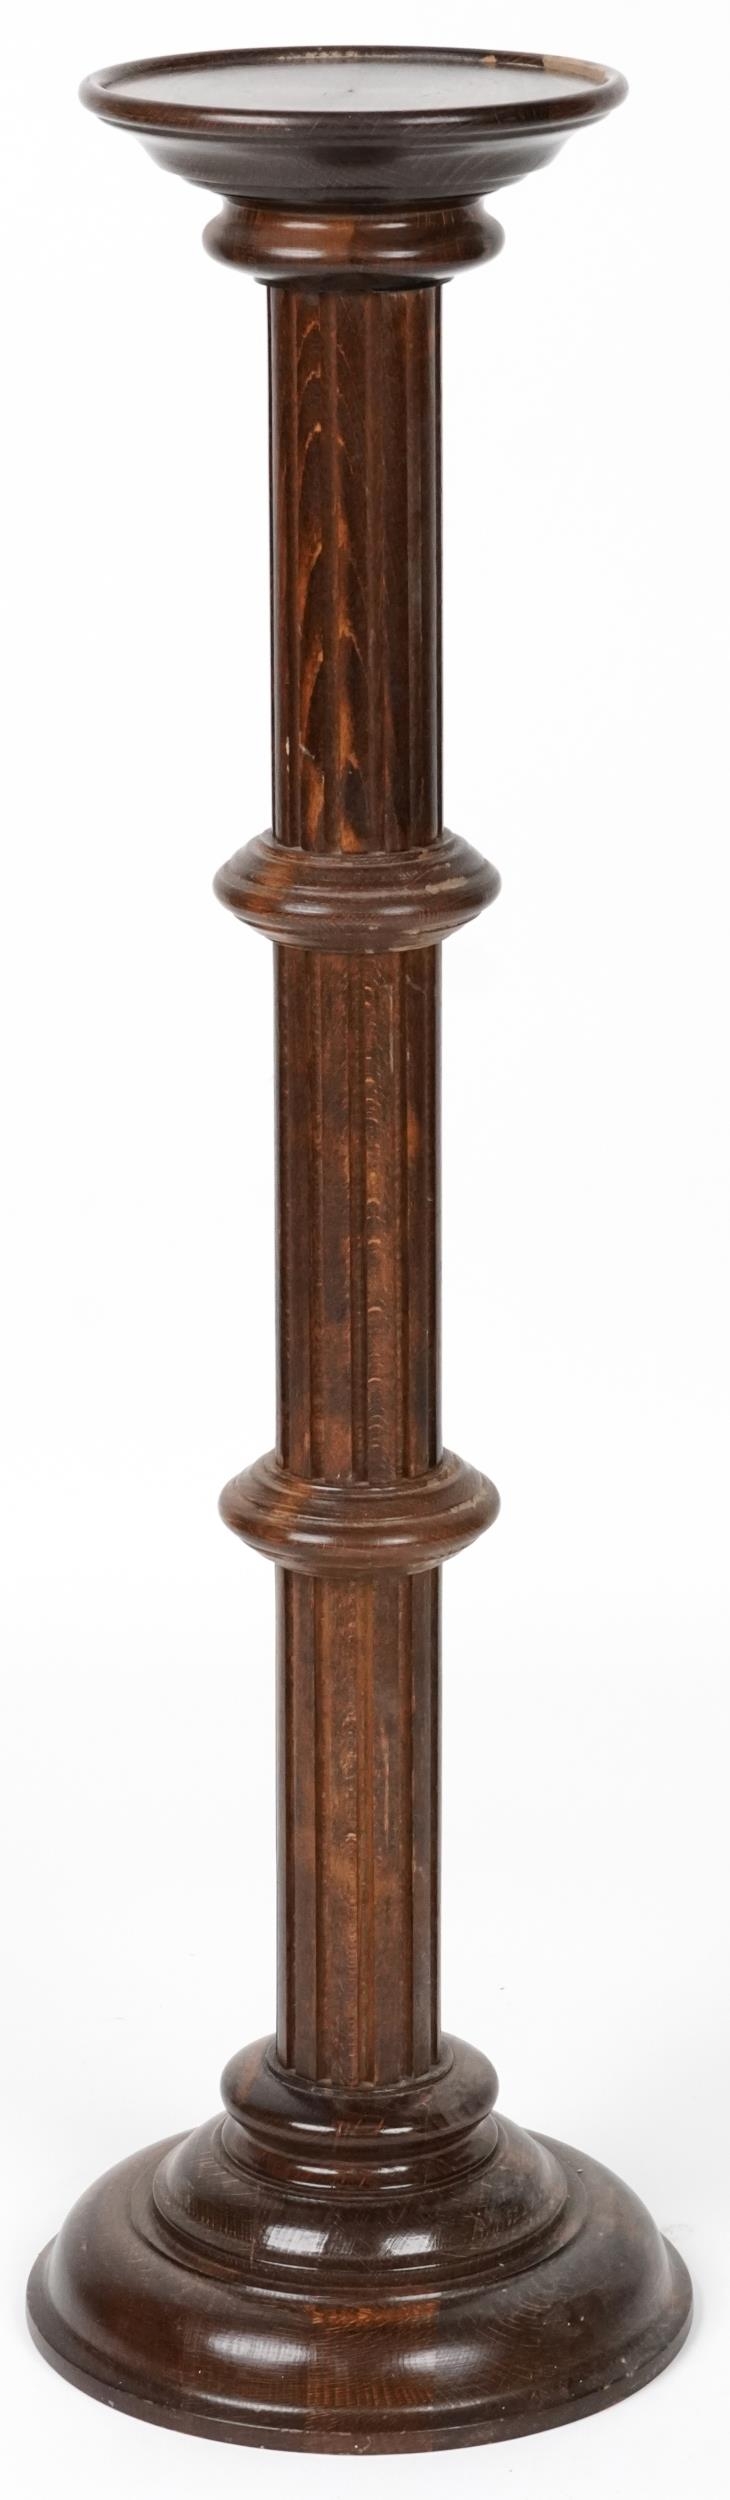 Carved oak torchere, 98cm high - Image 3 of 3